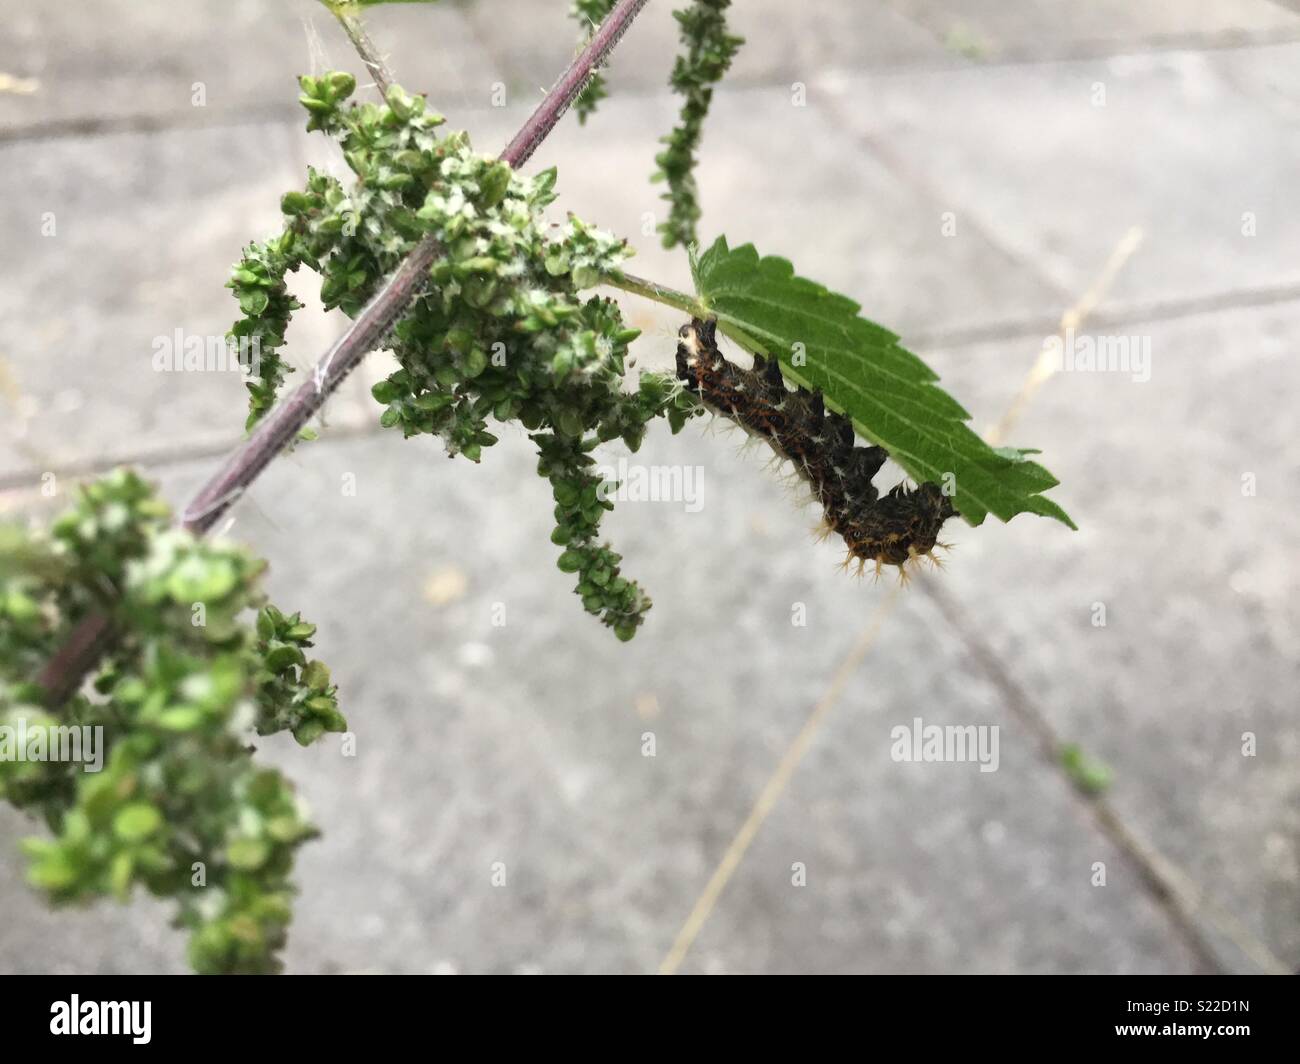 Comma caterpillar feeding on a nettle Stock Photo